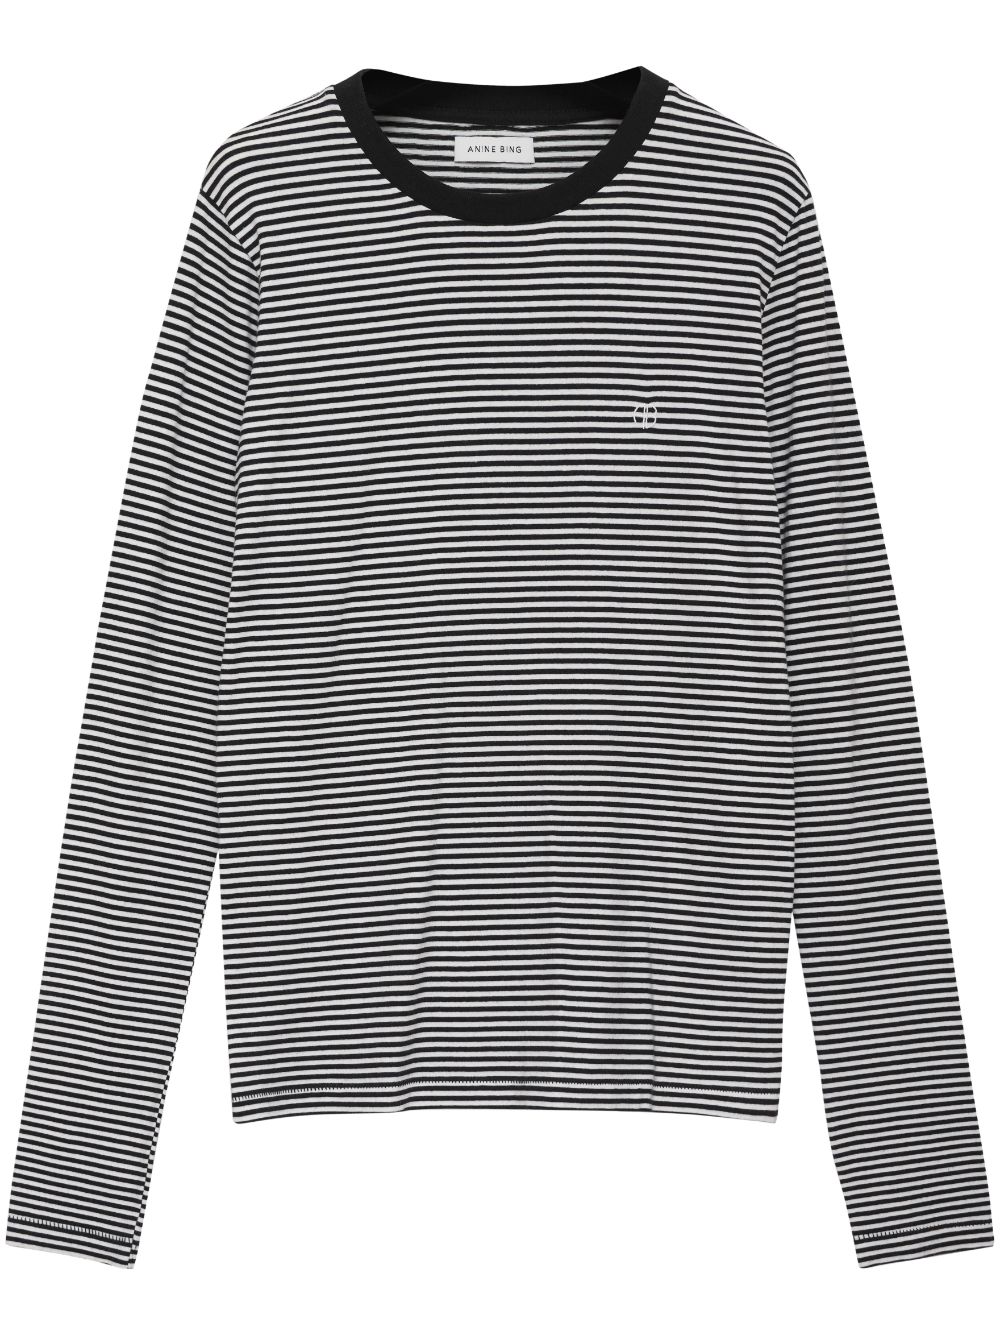 ANINE BING embroidered-logo striped top - Black von ANINE BING